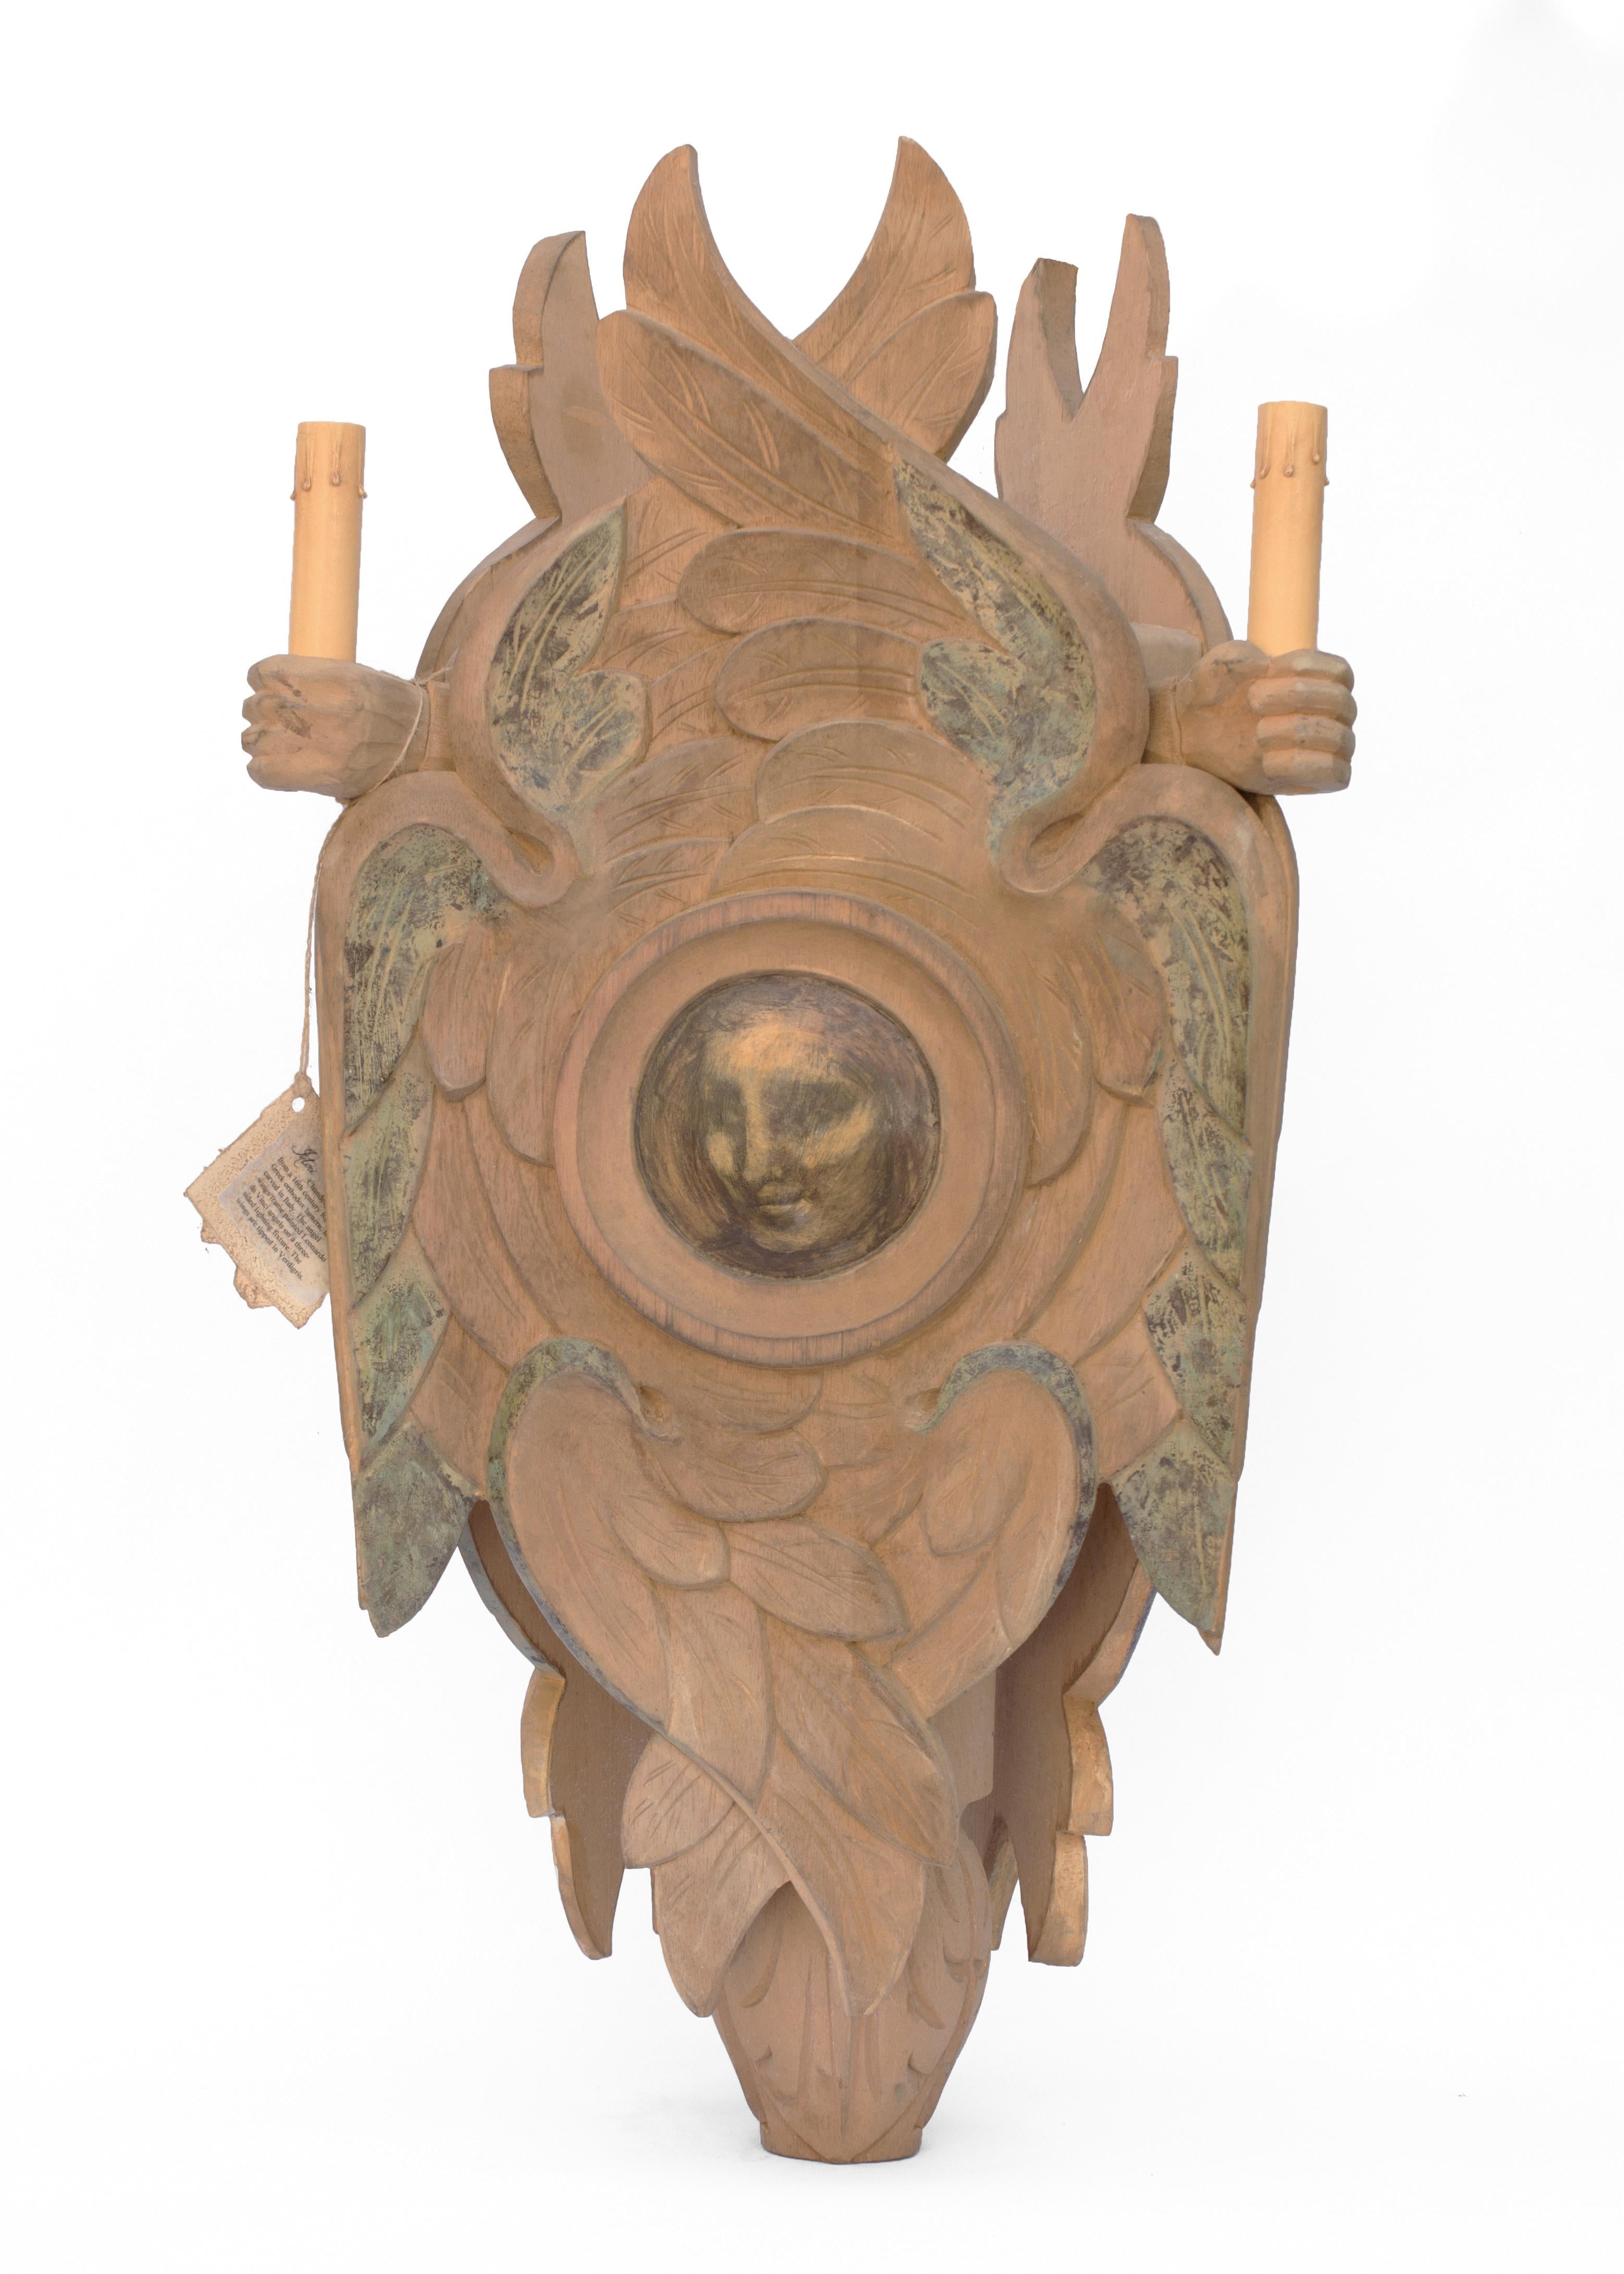 Lanterne en bois peint italienne sculptée à la main. Cette lanterne de lustre est inspirée d'une lanterne orthodoxe grecque russe du 16ème siècle. Les visages d'anges sont attribués à Léonard de Vinci et se trouvent sur le luminaire à trois côtés,